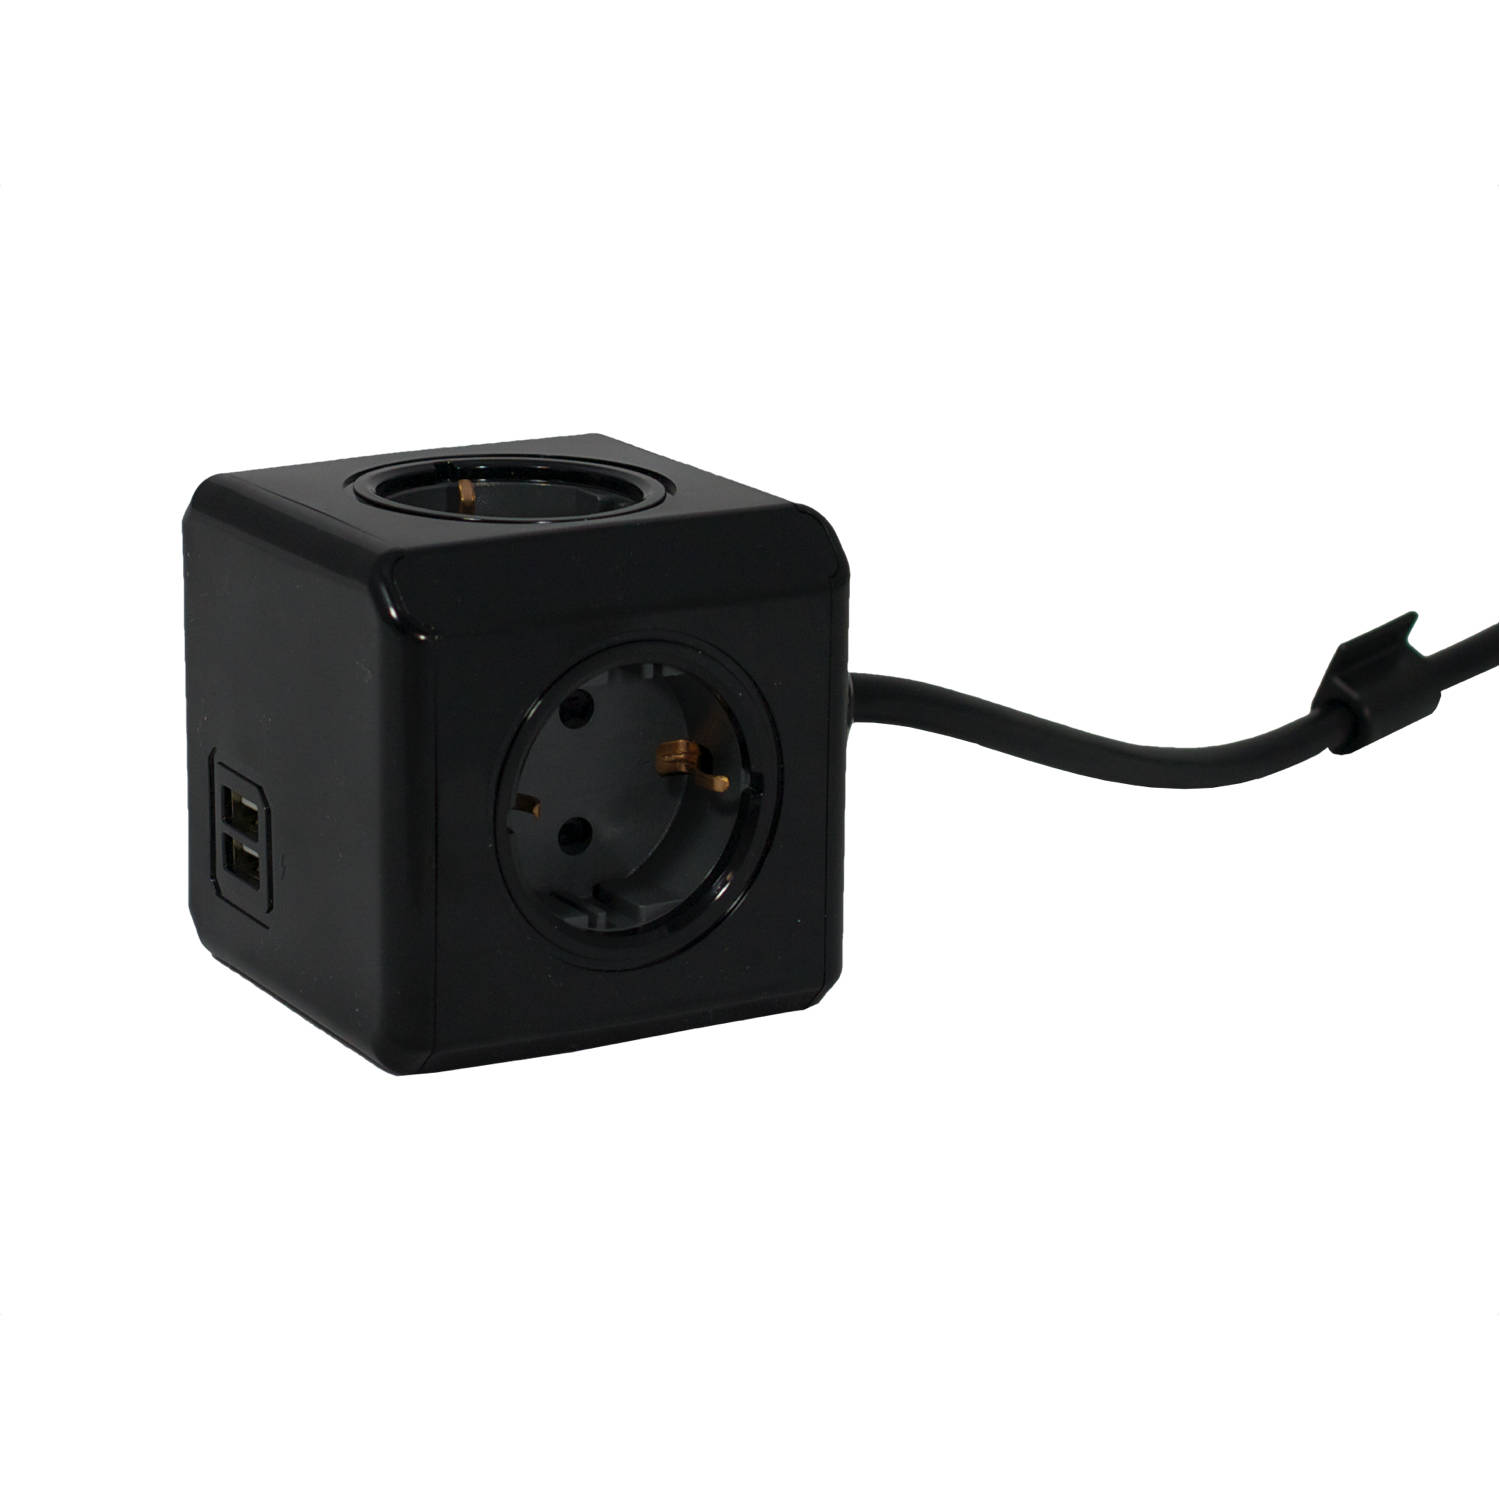 PowerCube Extended Duo USB - 3 meter kabel - Zwart/Grijs - Limited Edition - 4 stopcontacten - 2 USB laders - NL\/DE (Type F)